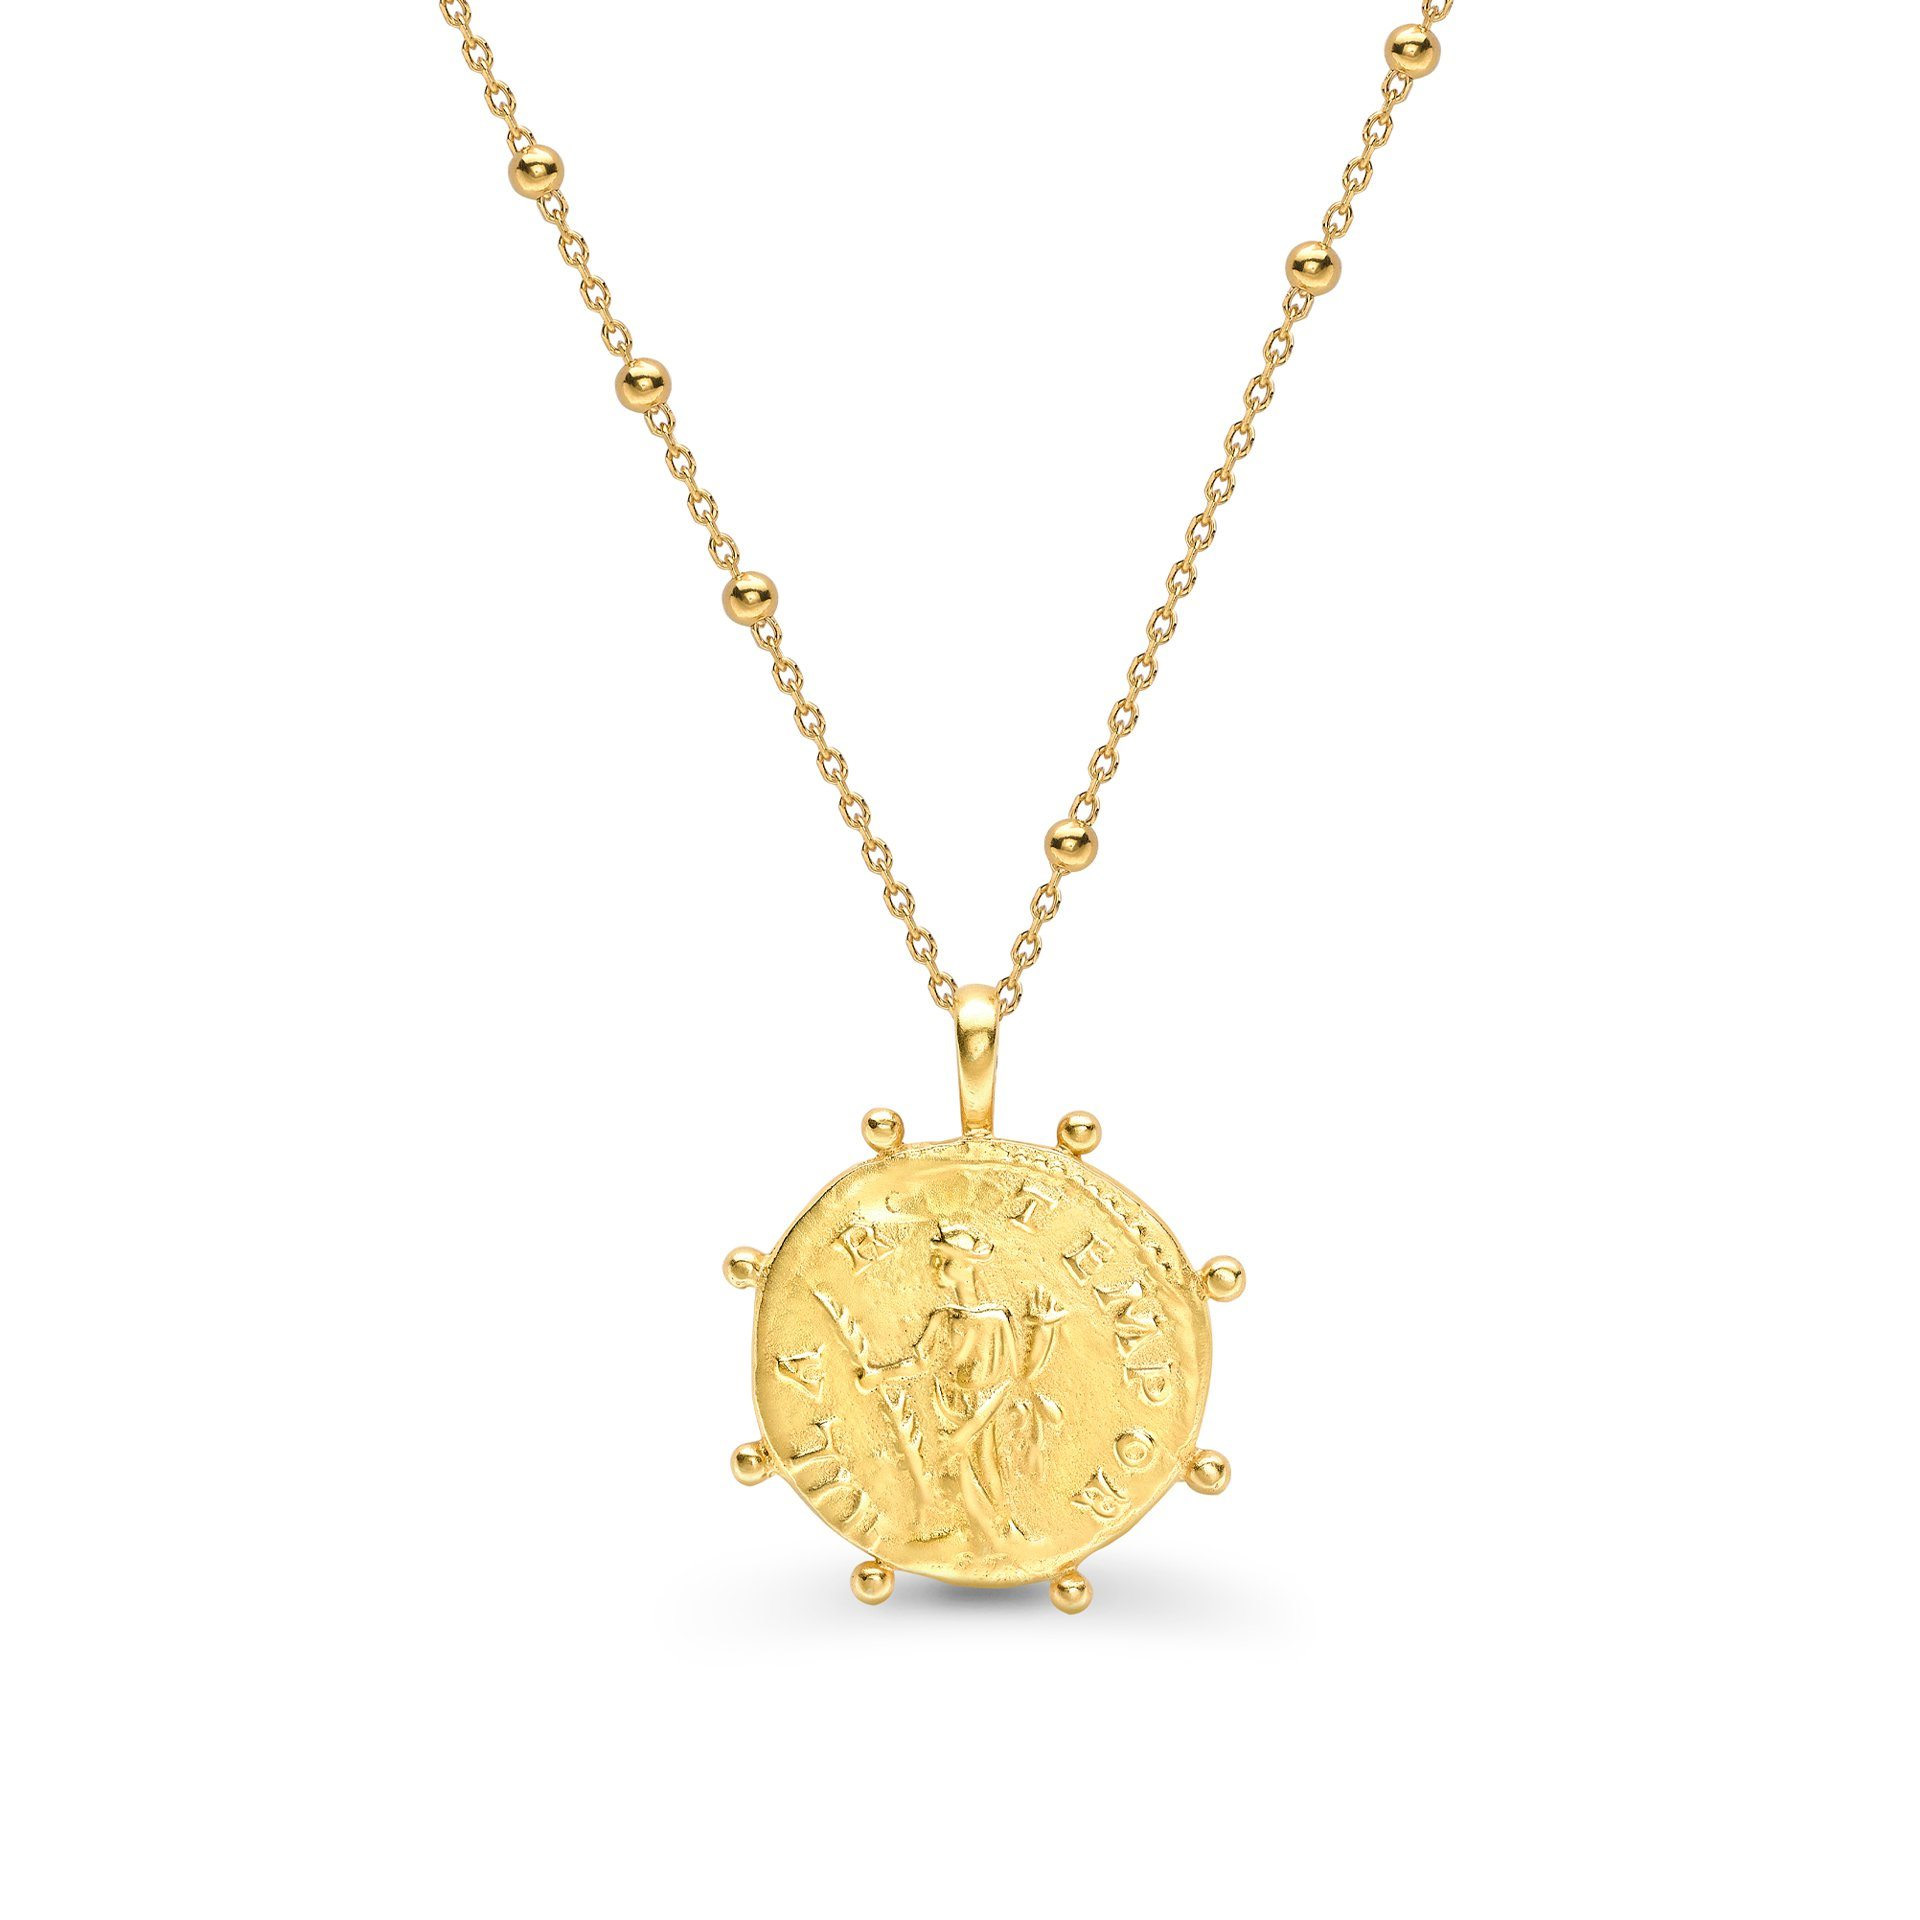 Grossist OEM/ODM smycken 18 karat guld-vermeil halsband med romerskt mynt på en pärlkedja silversmycken